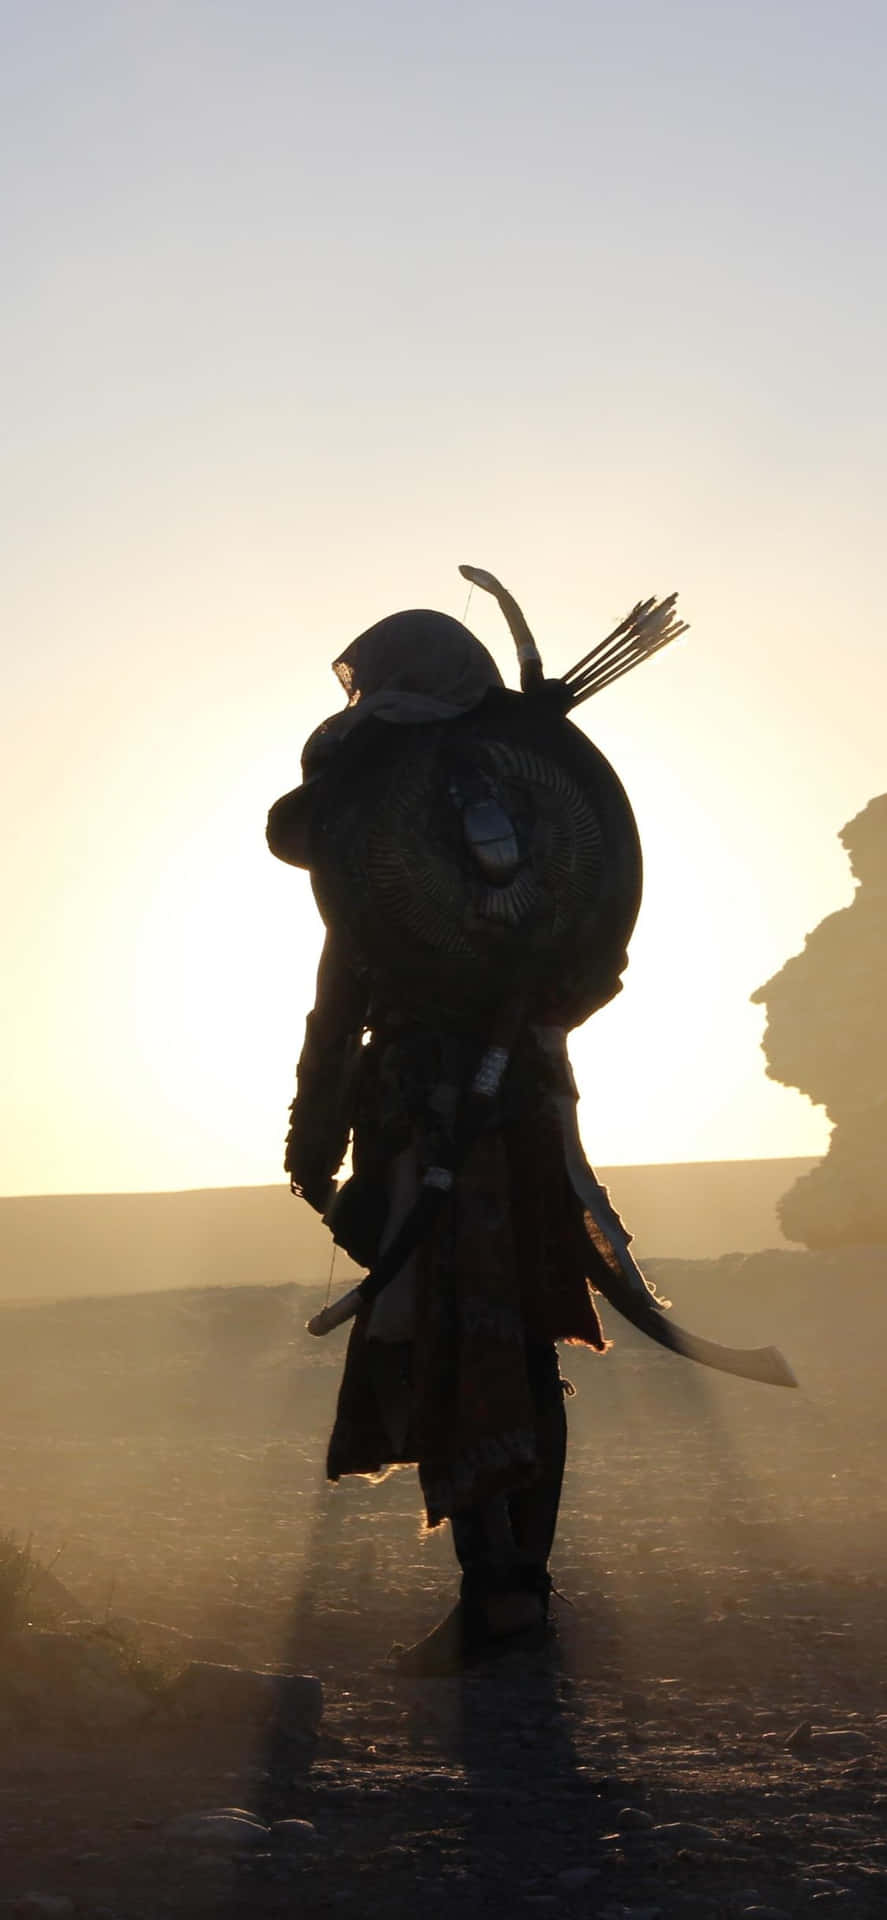 A Man In A Robe Is Walking In The Desert